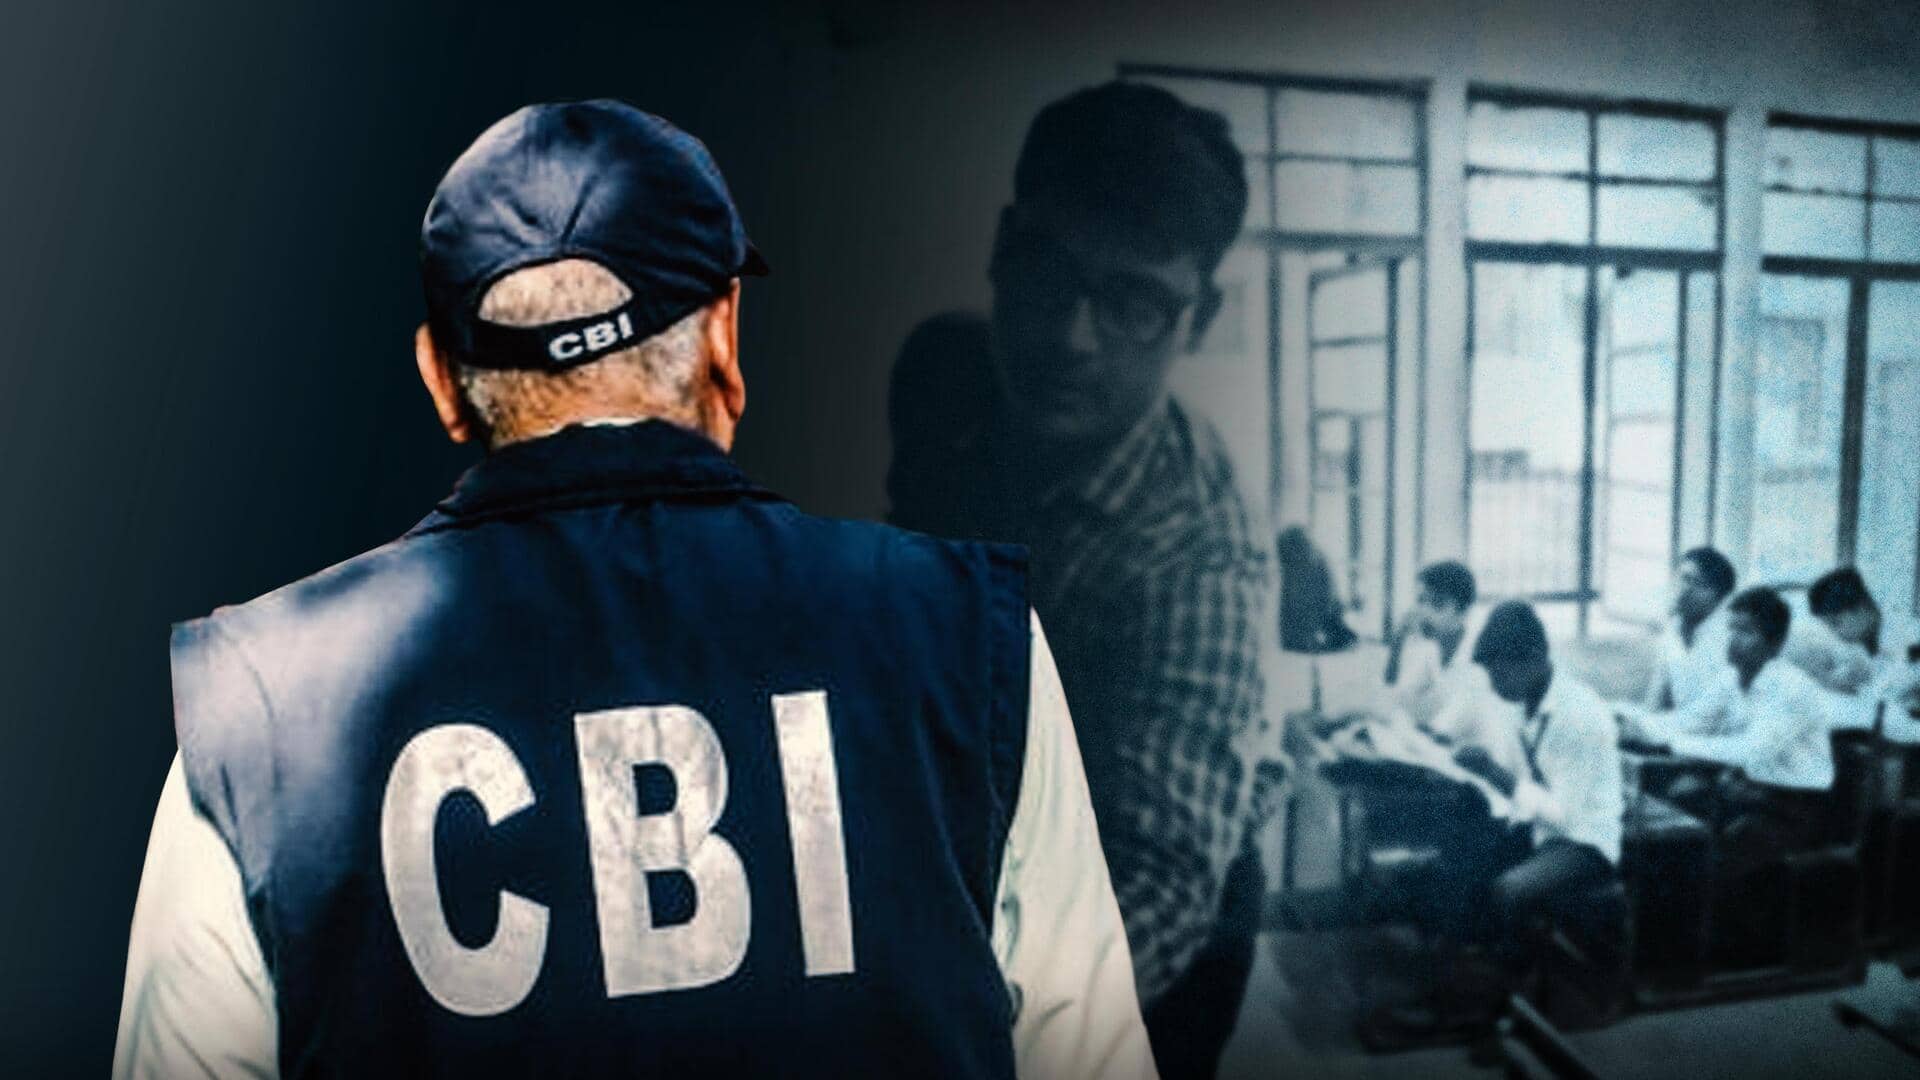 दिल्ली: शिक्षकों भर्ती में कथित अनियमितता की जांच करेगी CBI, जानें मामला 